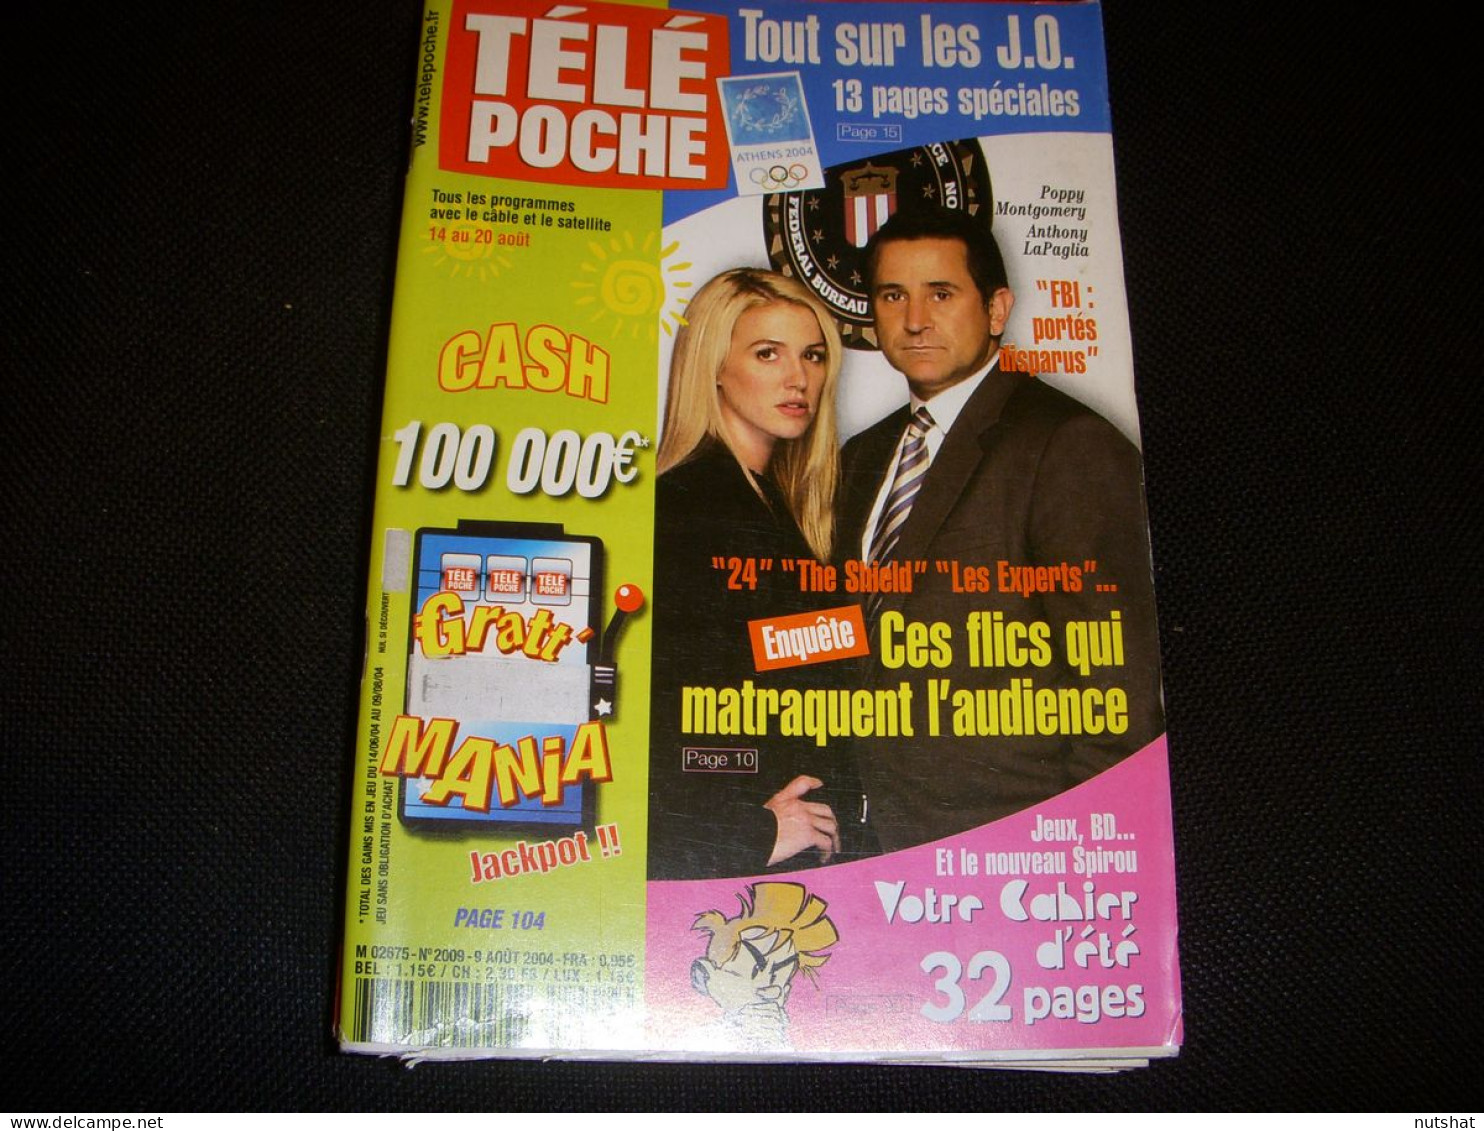 TELE POCHE 2009 09.08.2004 FBI LAPAGLIA ST EXUPERY JEROME ATTAL CECILE De FRANCE - Television